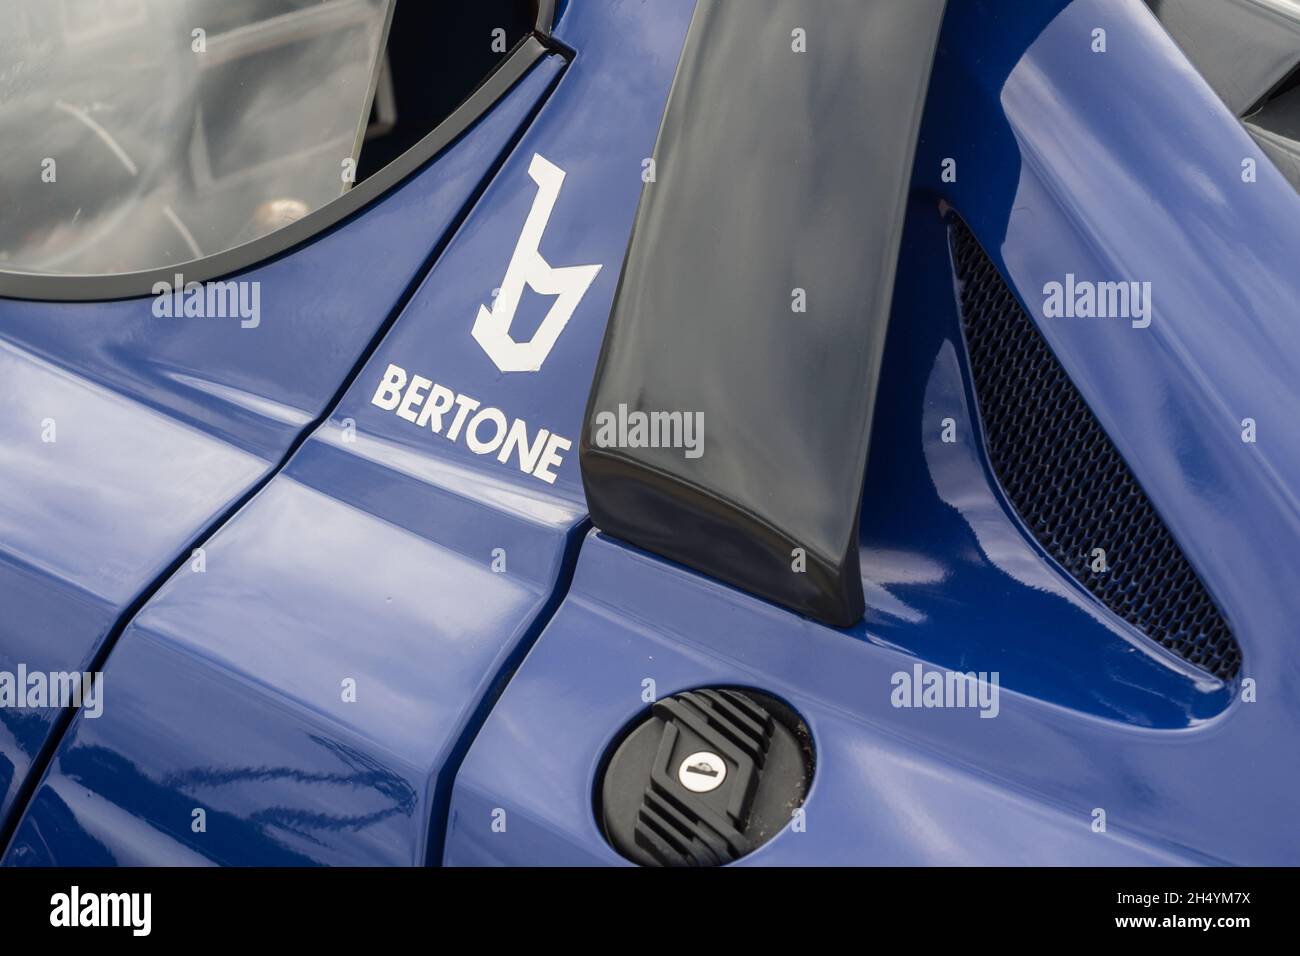 Gros plan de l'autocollant du logo Bertone sur le côté d'une voiture de rallye sportive classique italienne classique Lancia Stratos HF Stradale bleue. Banque D'Images